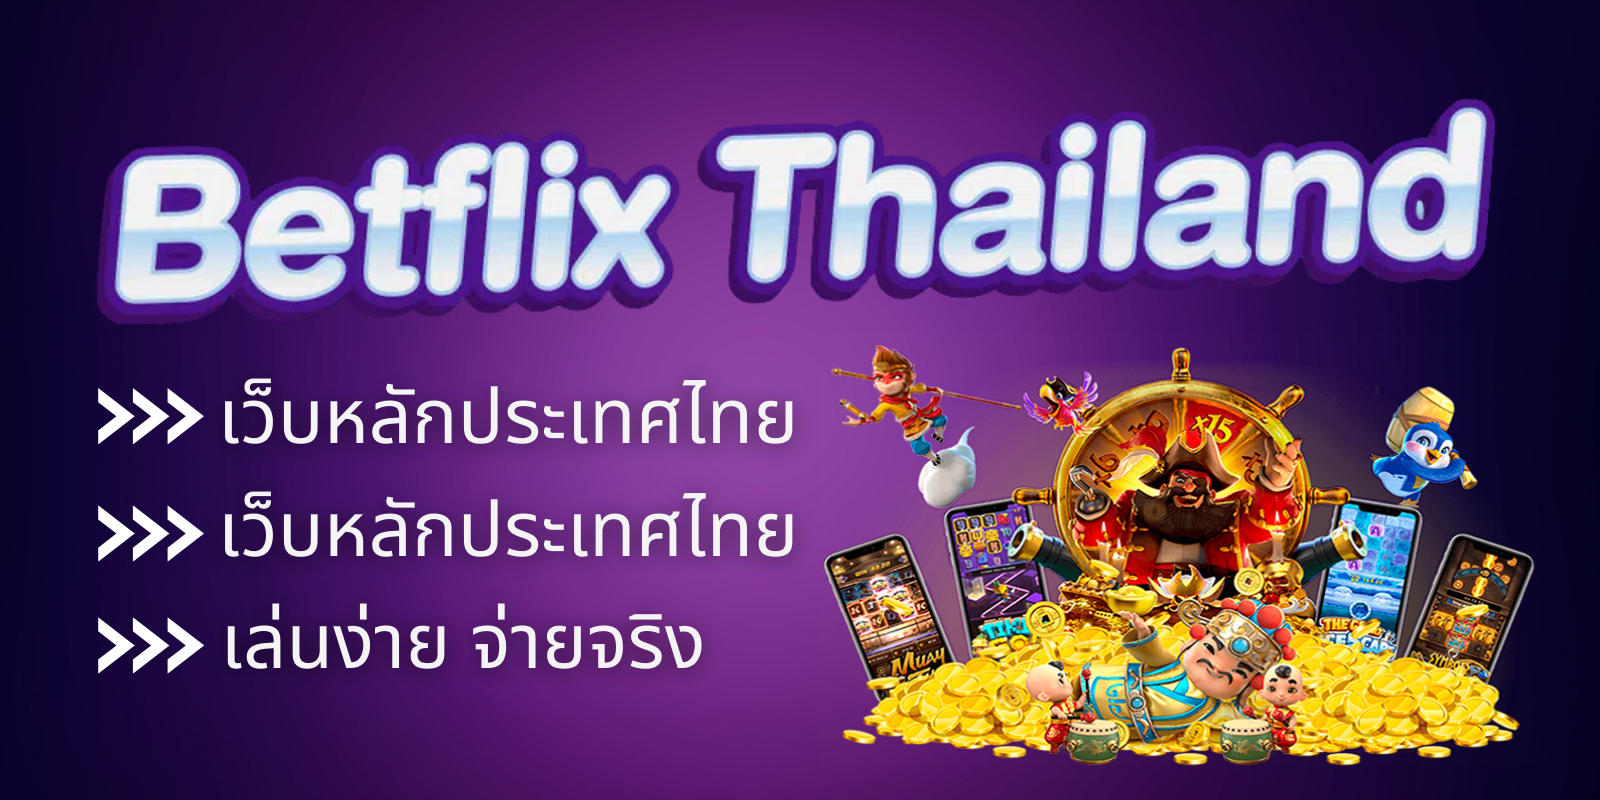 BETFLIX THAILAND เว็บหลักประเทศไทย สล็อตเว็บใหญ่ เล่นง่าย จ่ายจริง